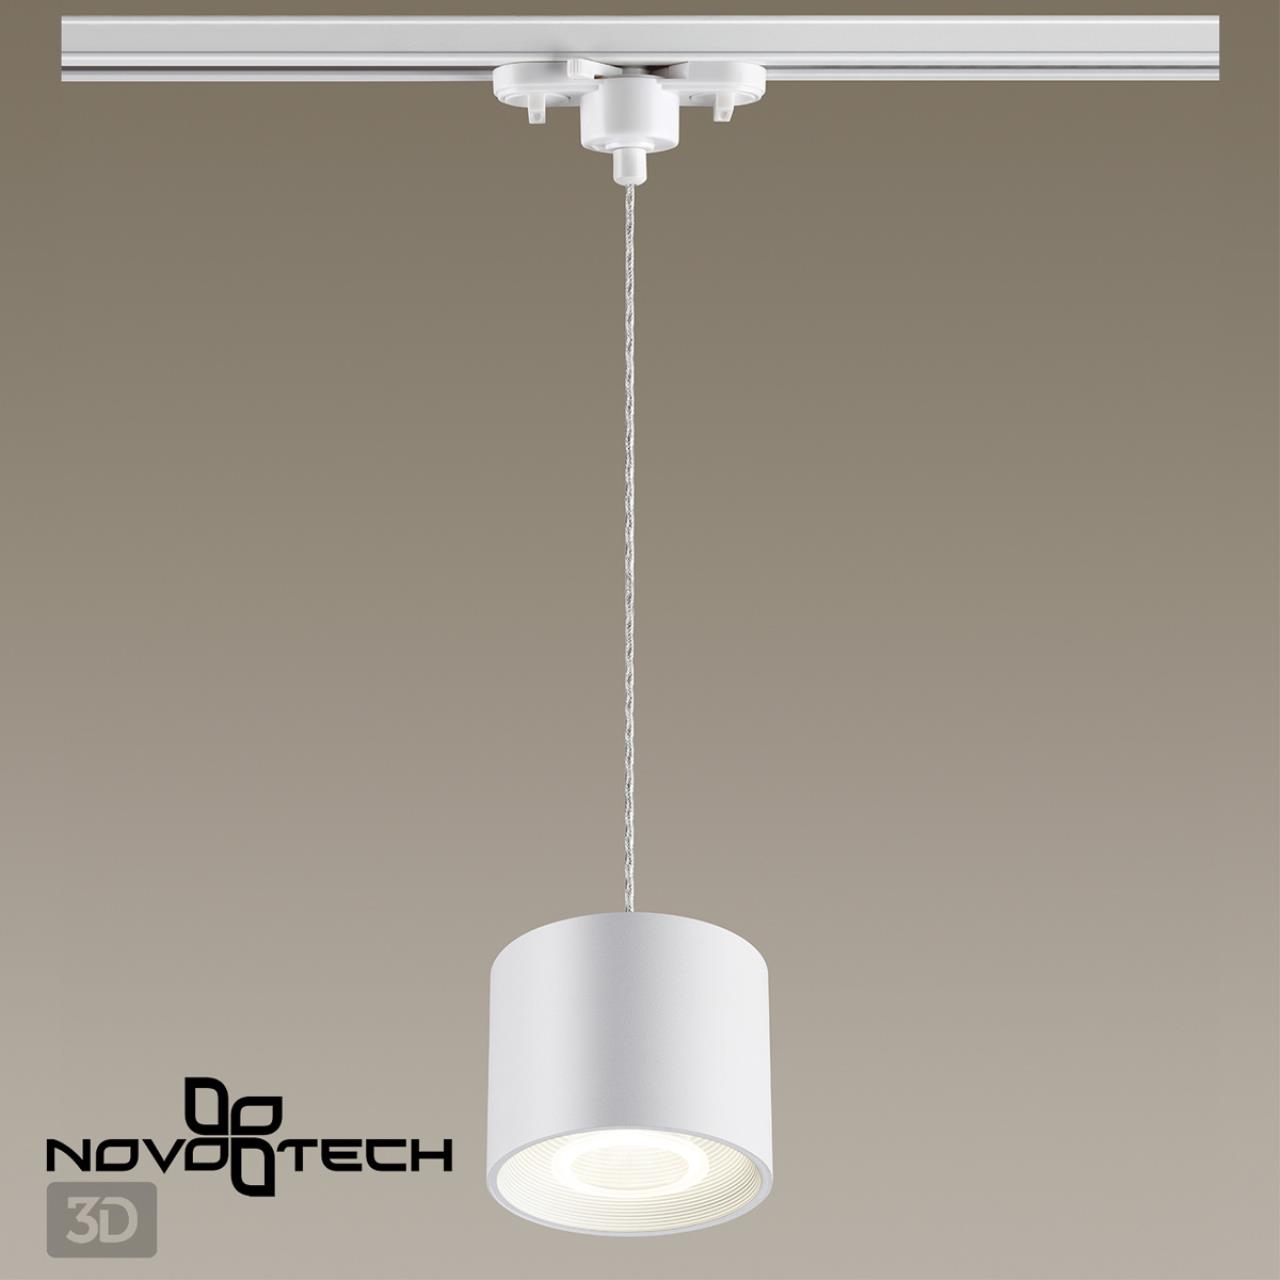 Однофазный трековый светодиодный светильник подвесной, длина провода 1.2м Novotech 358795